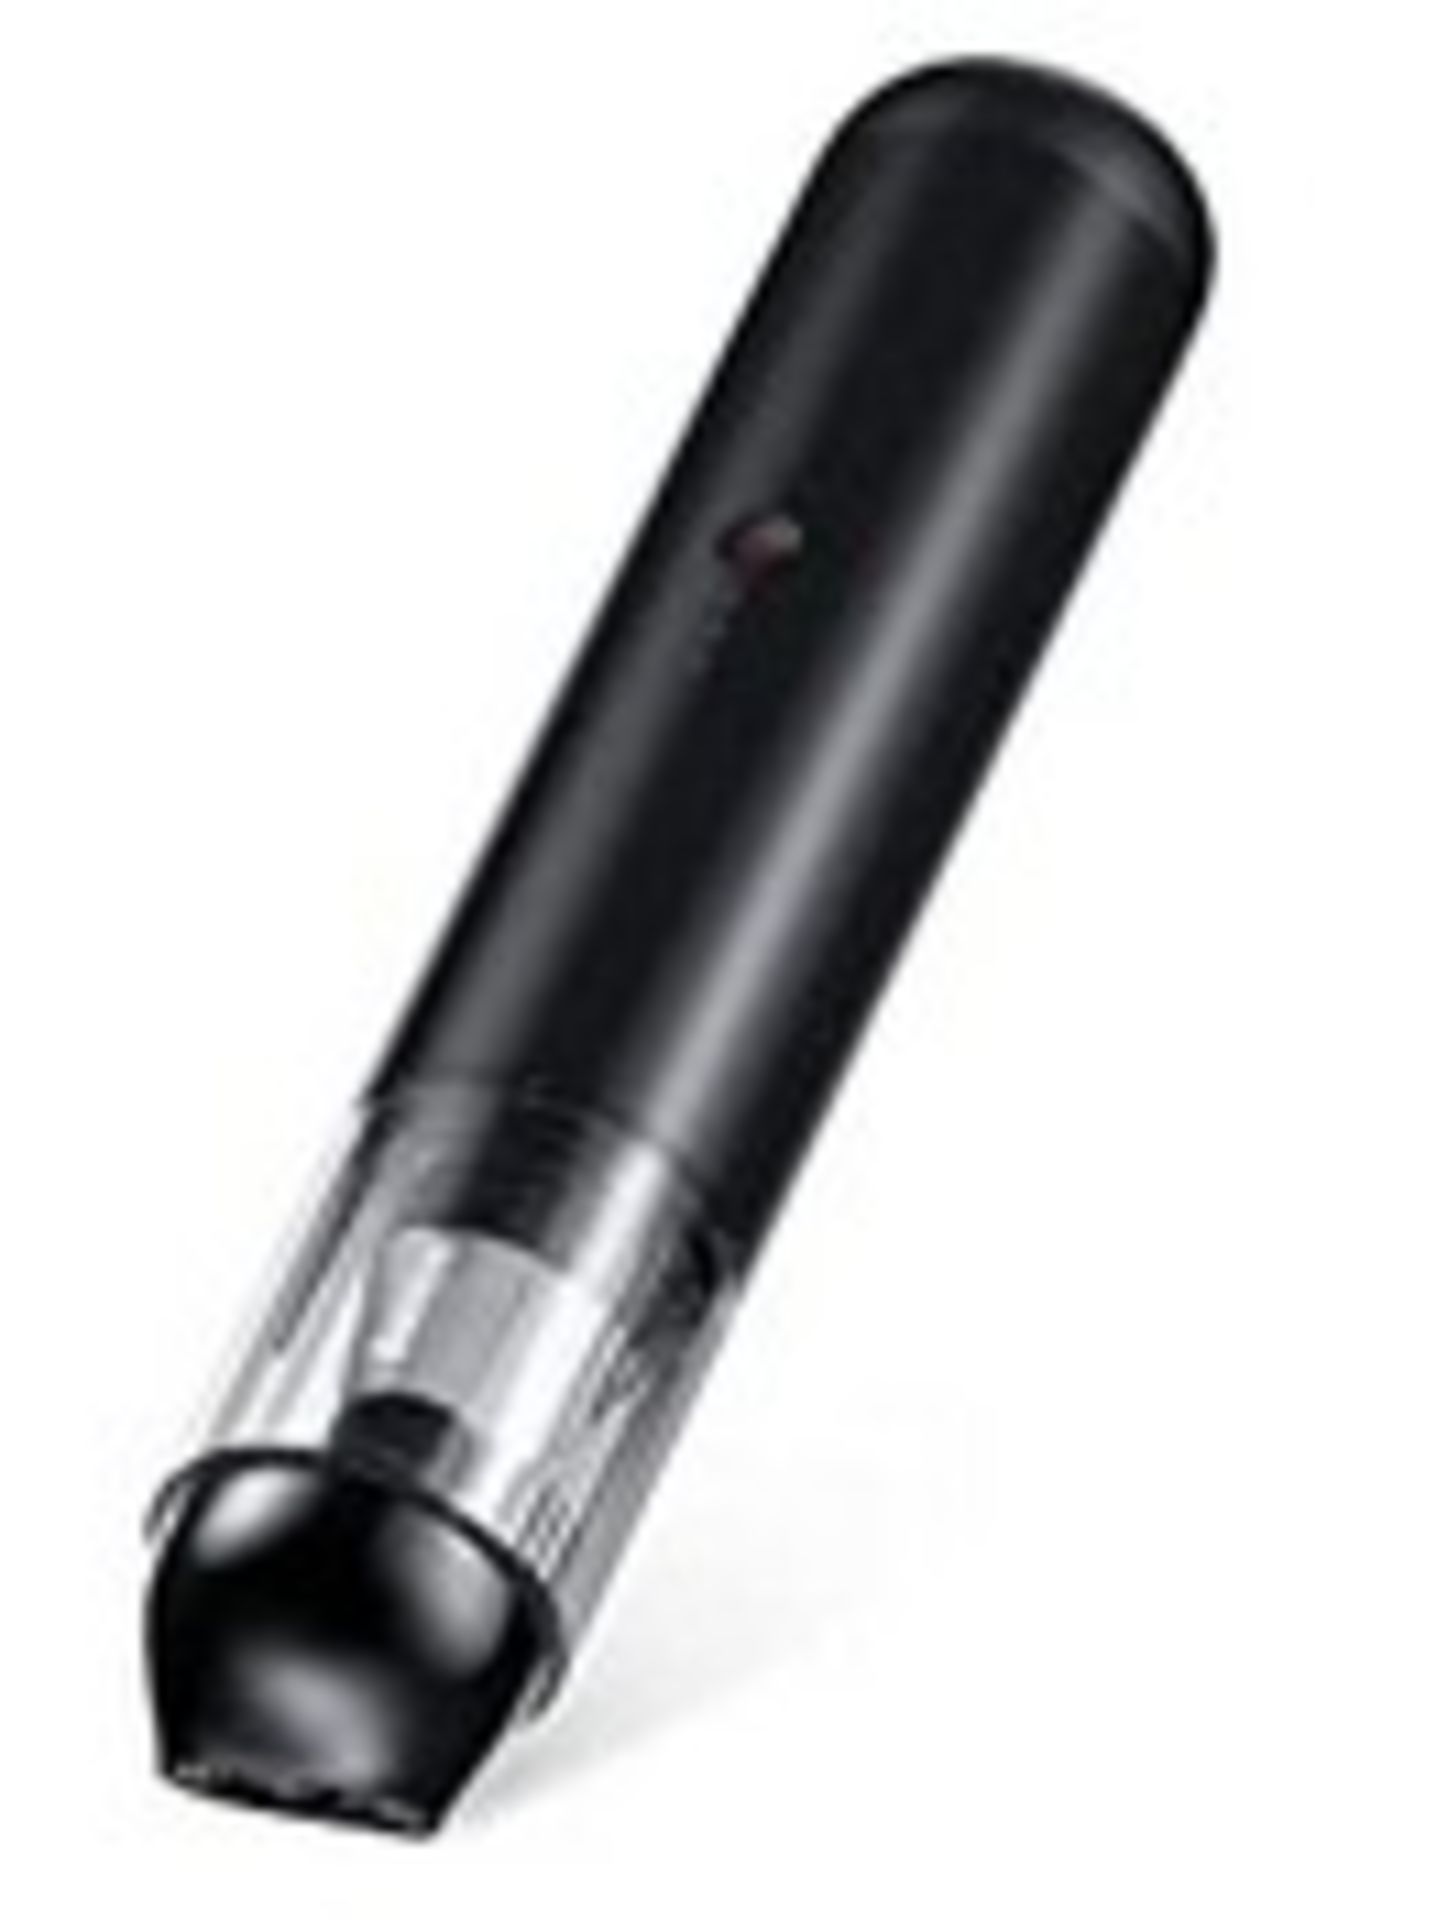 RRP £89.99 Baseus Handheld Vacuum